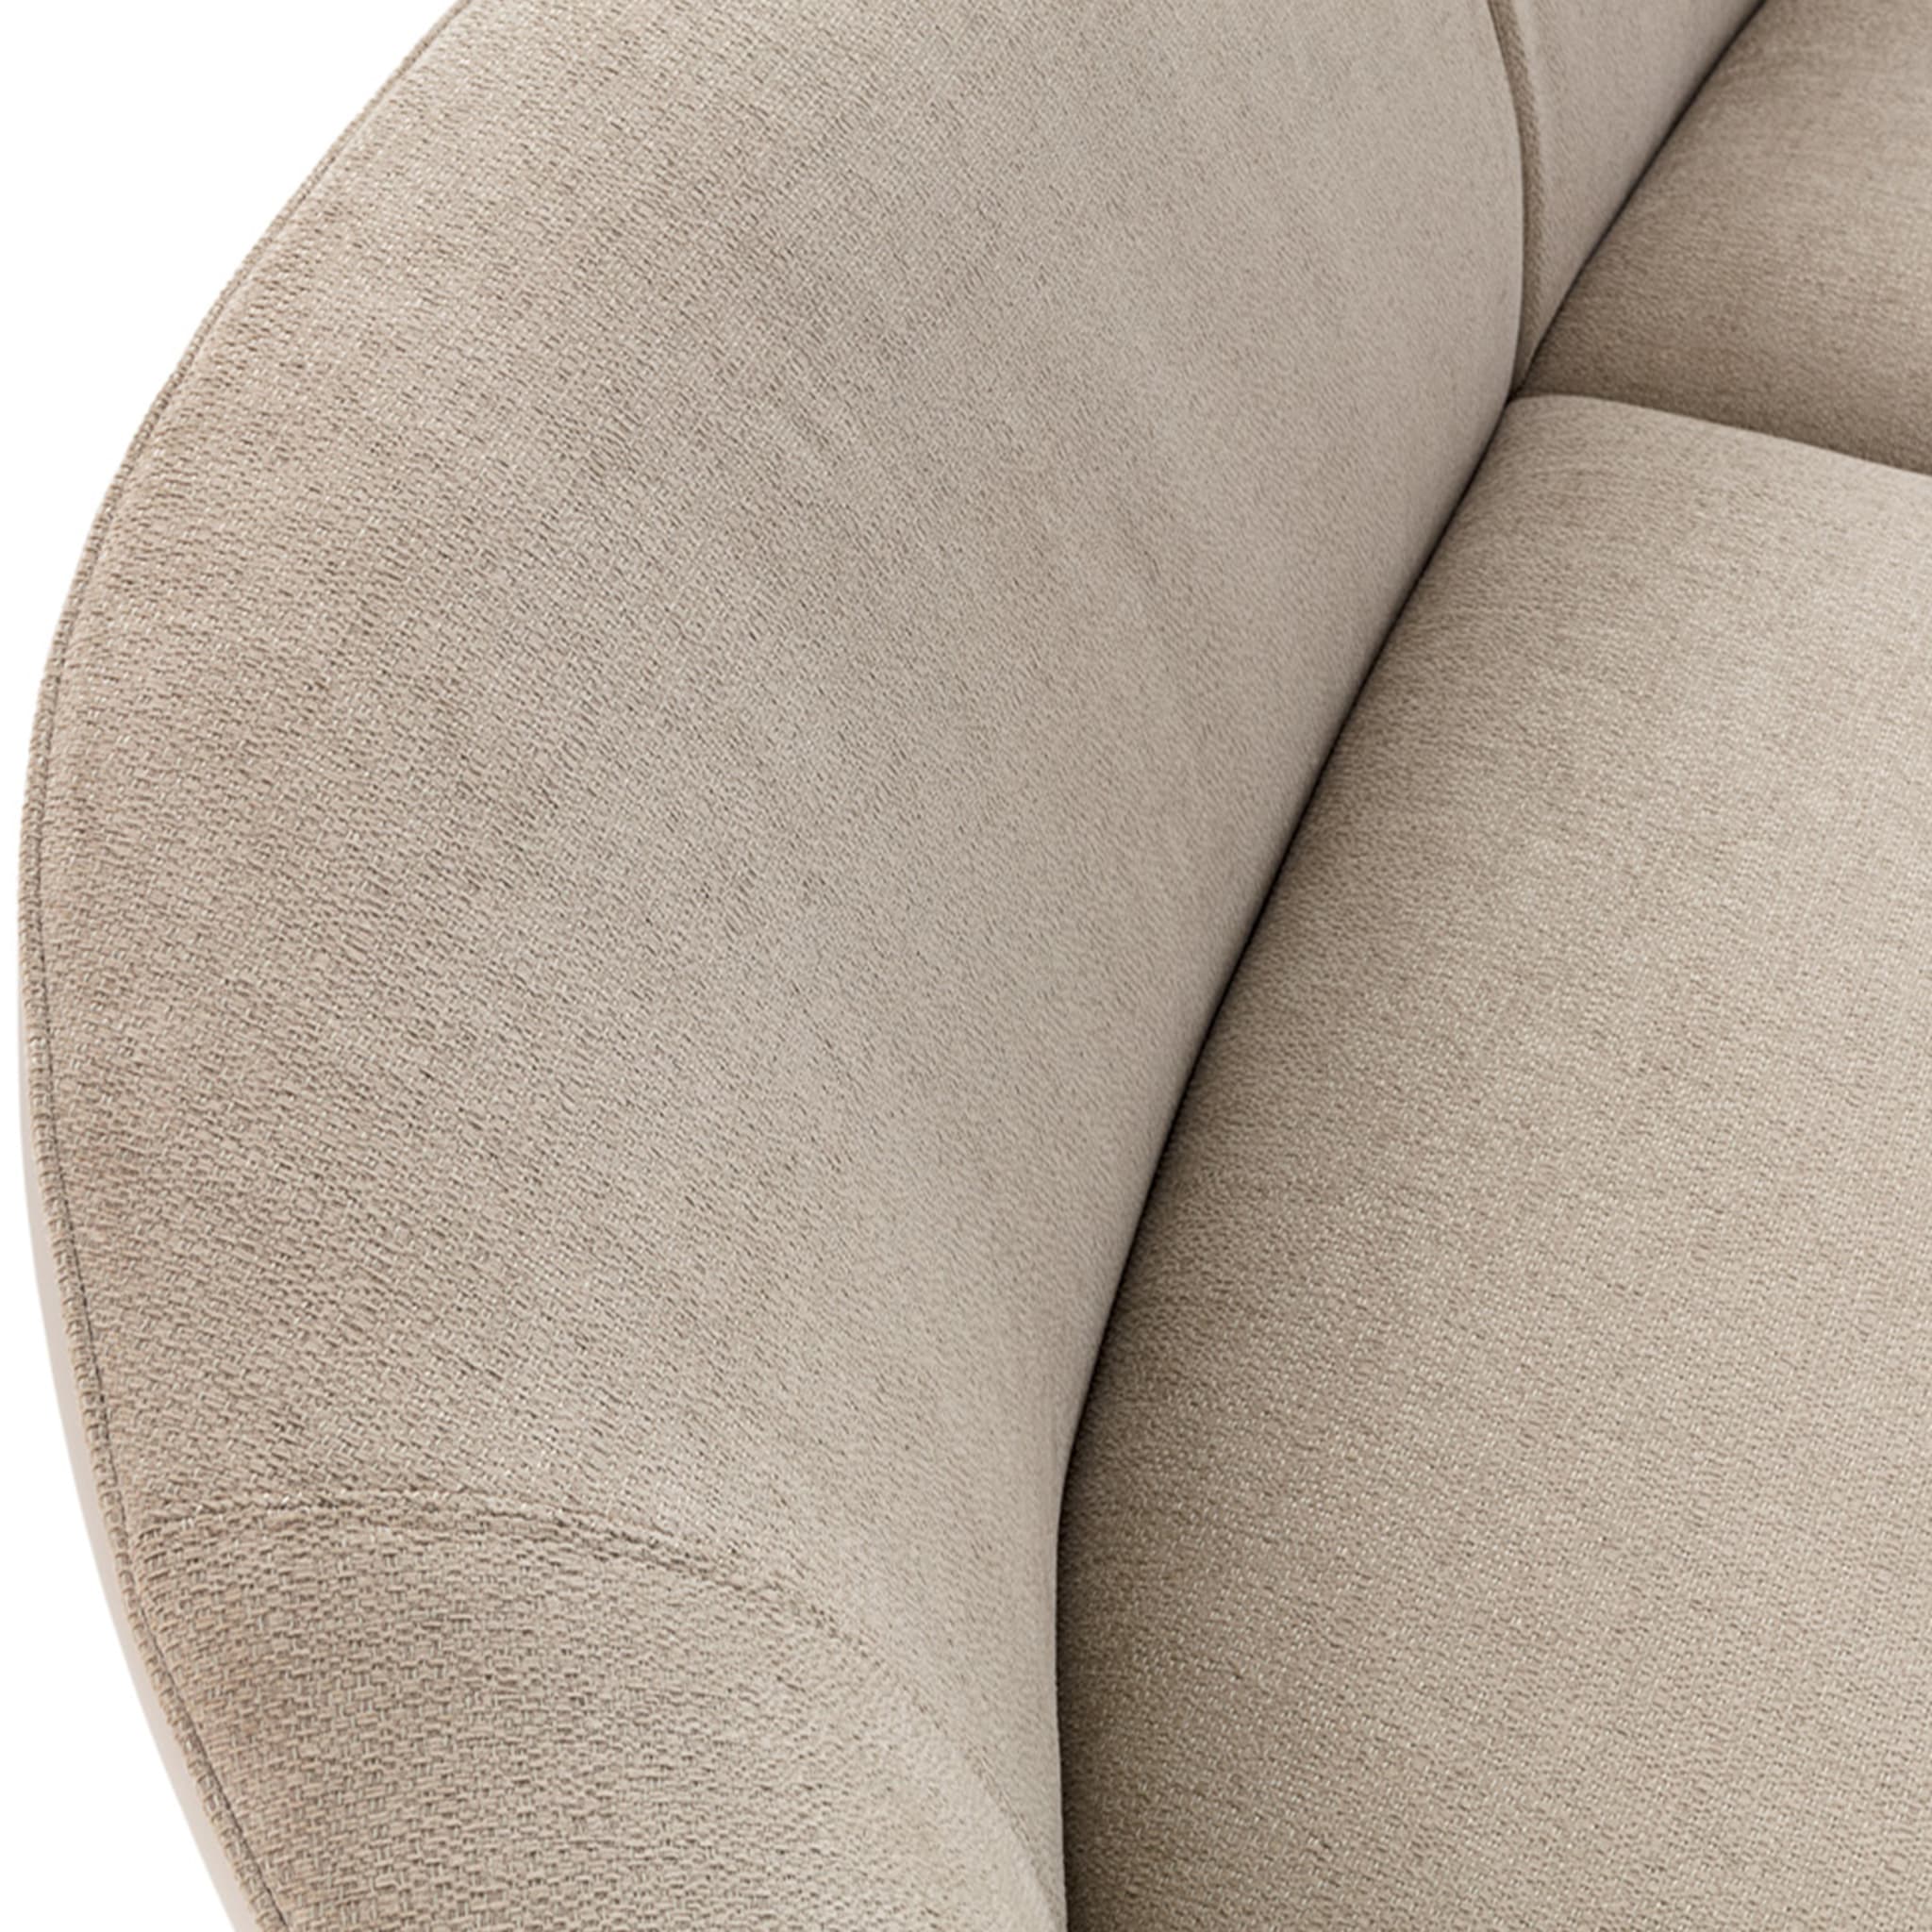 Prestige Modular Sofa - White #2 - Alternative view 1